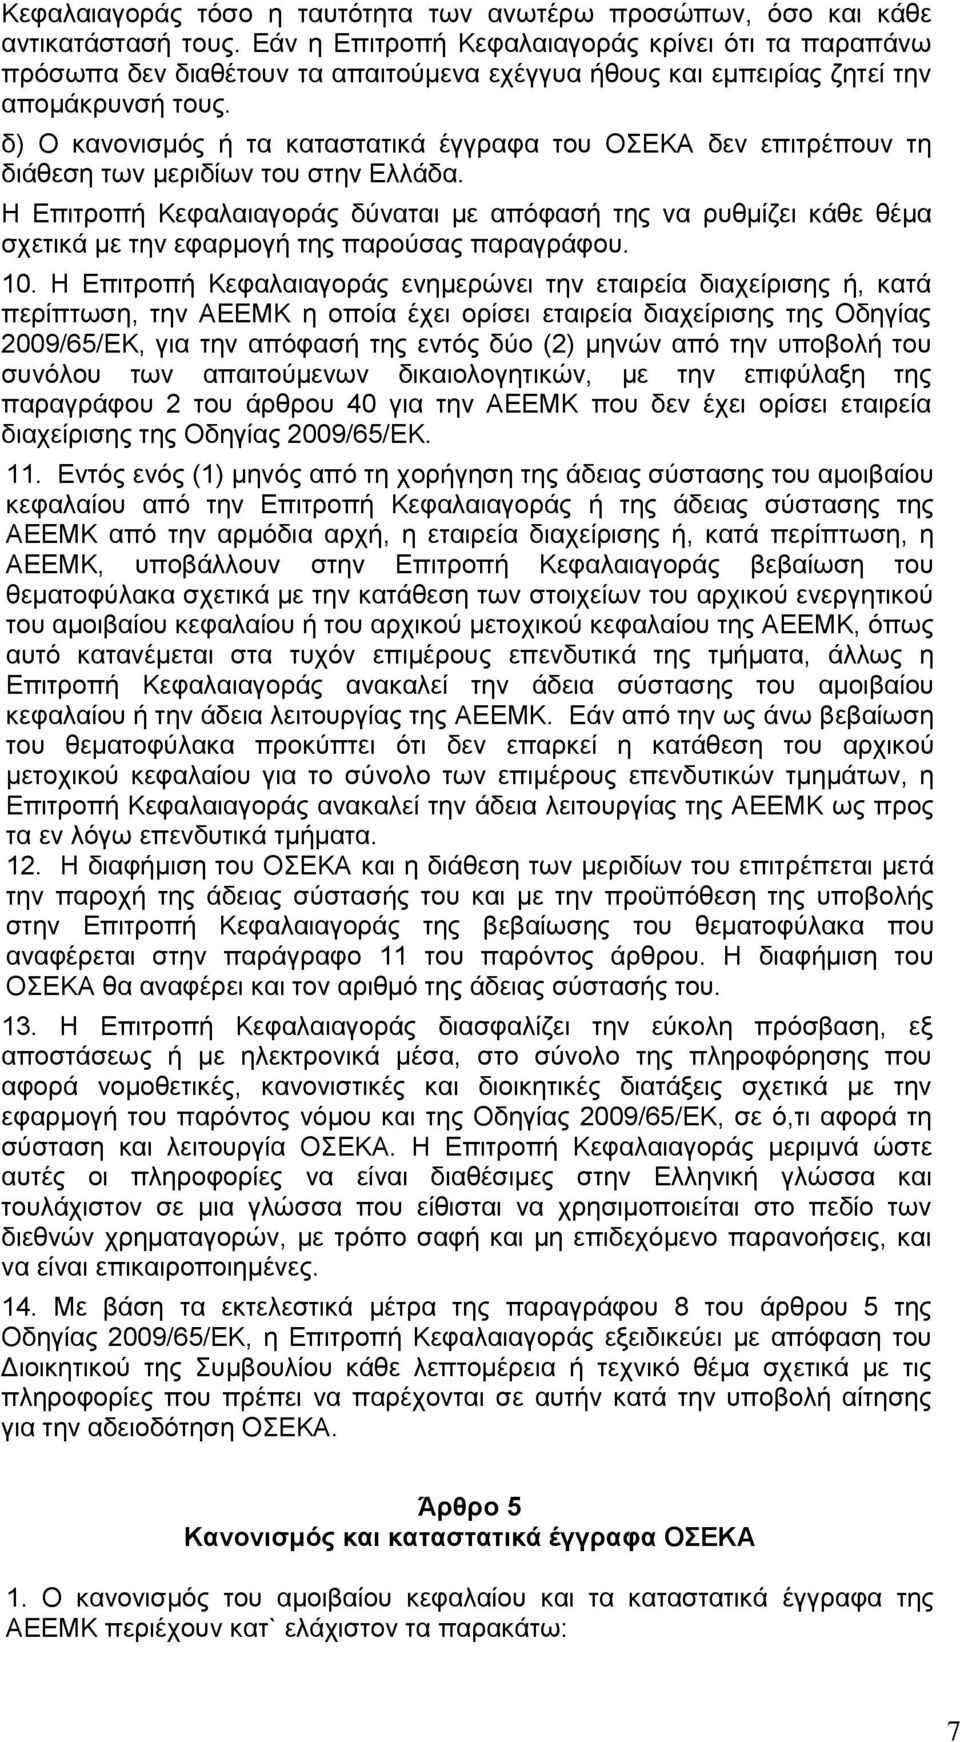 δ) Ο κανονισμός ή τα καταστατικά έγγραφα του ΟΣΕΚΑ δεν επιτρέπουν τη διάθεση των μεριδίων του στην Ελλάδα.